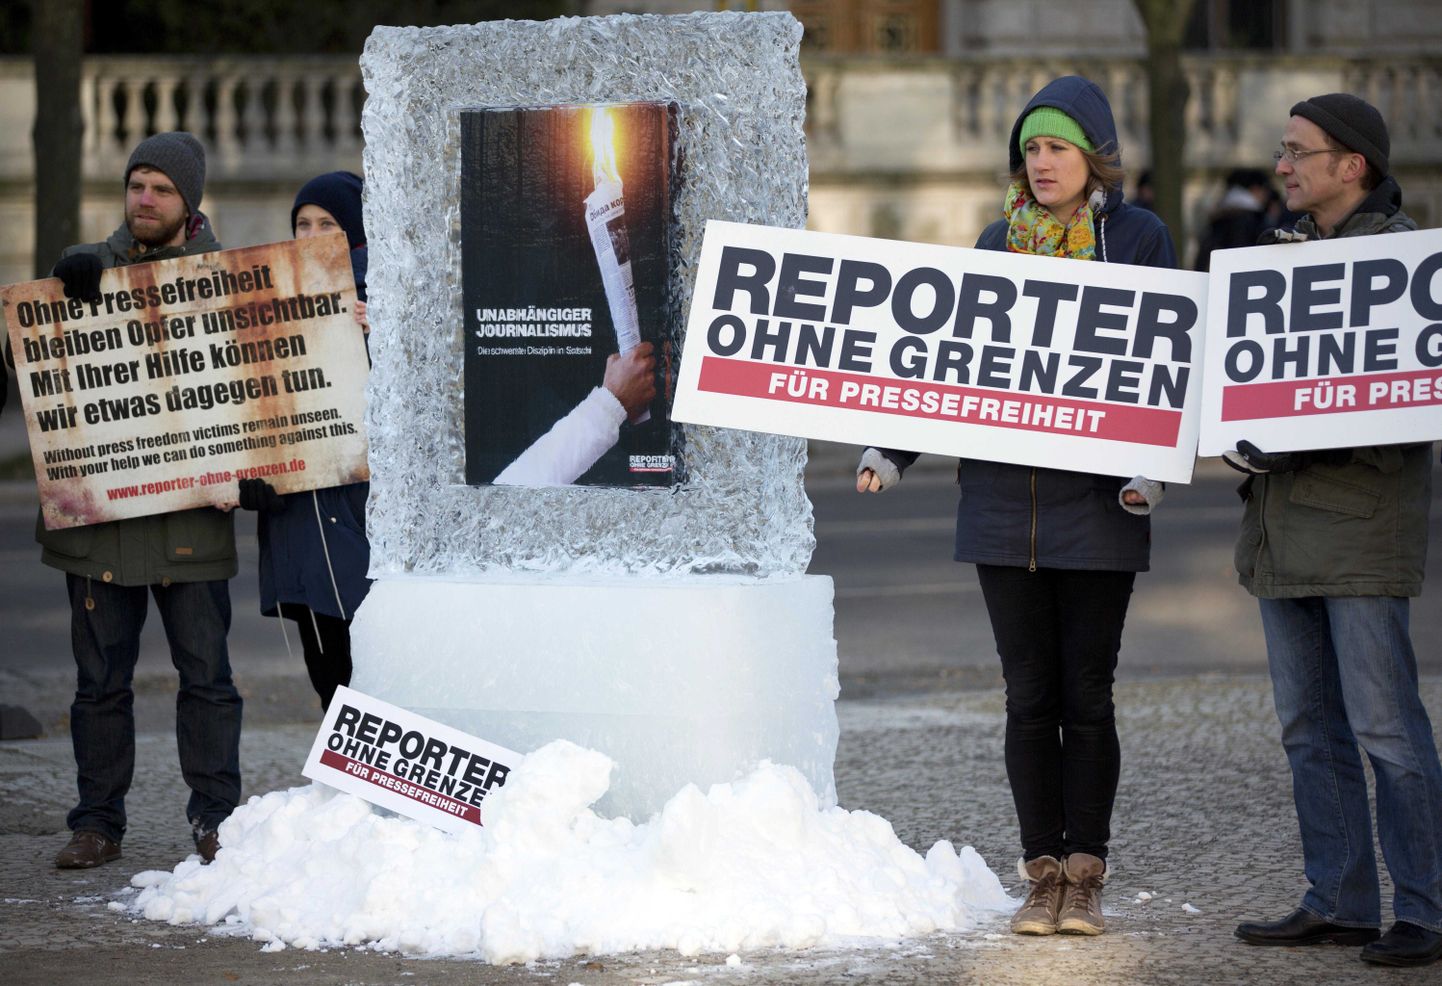 Talvine meeleavaldus Venemaa saatkonna ees Berliinis, millega nõuti selles riigis pressivabadust.